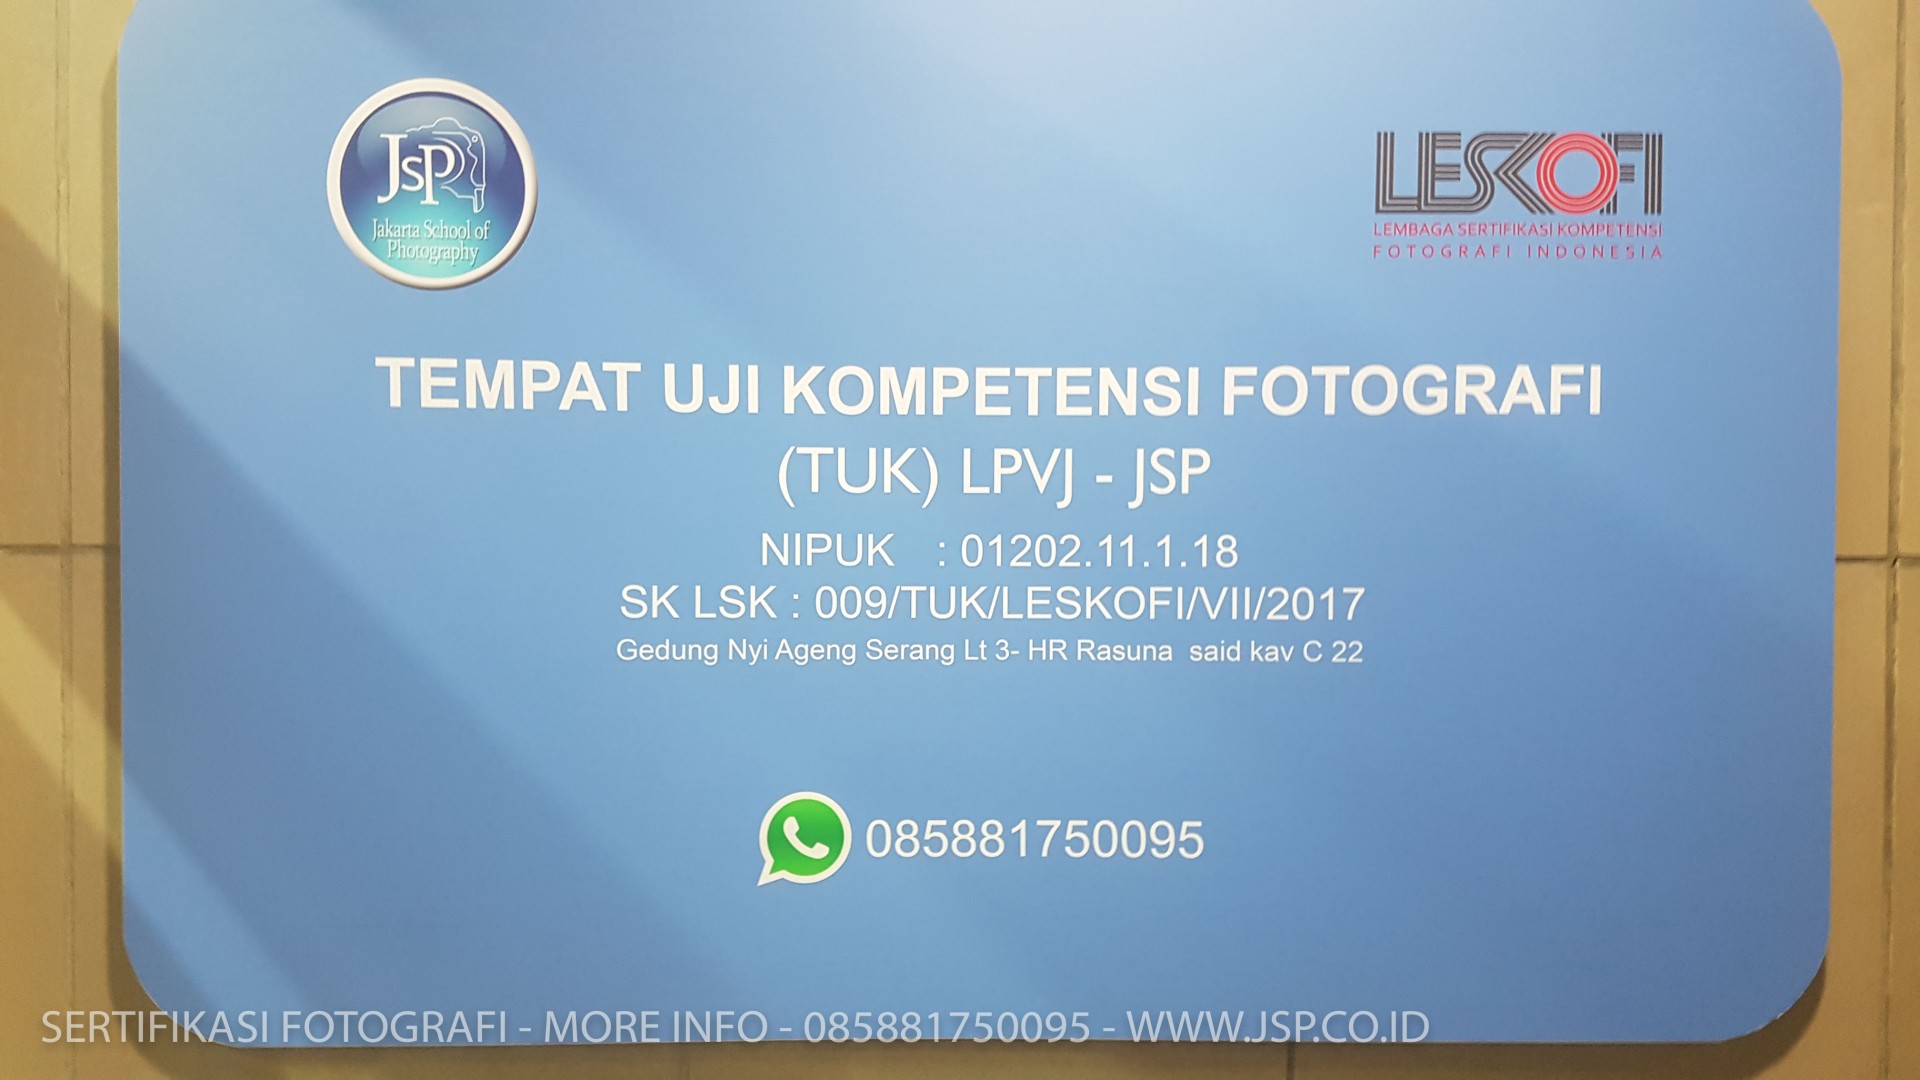 sertifikasi fotografi indonesia-6